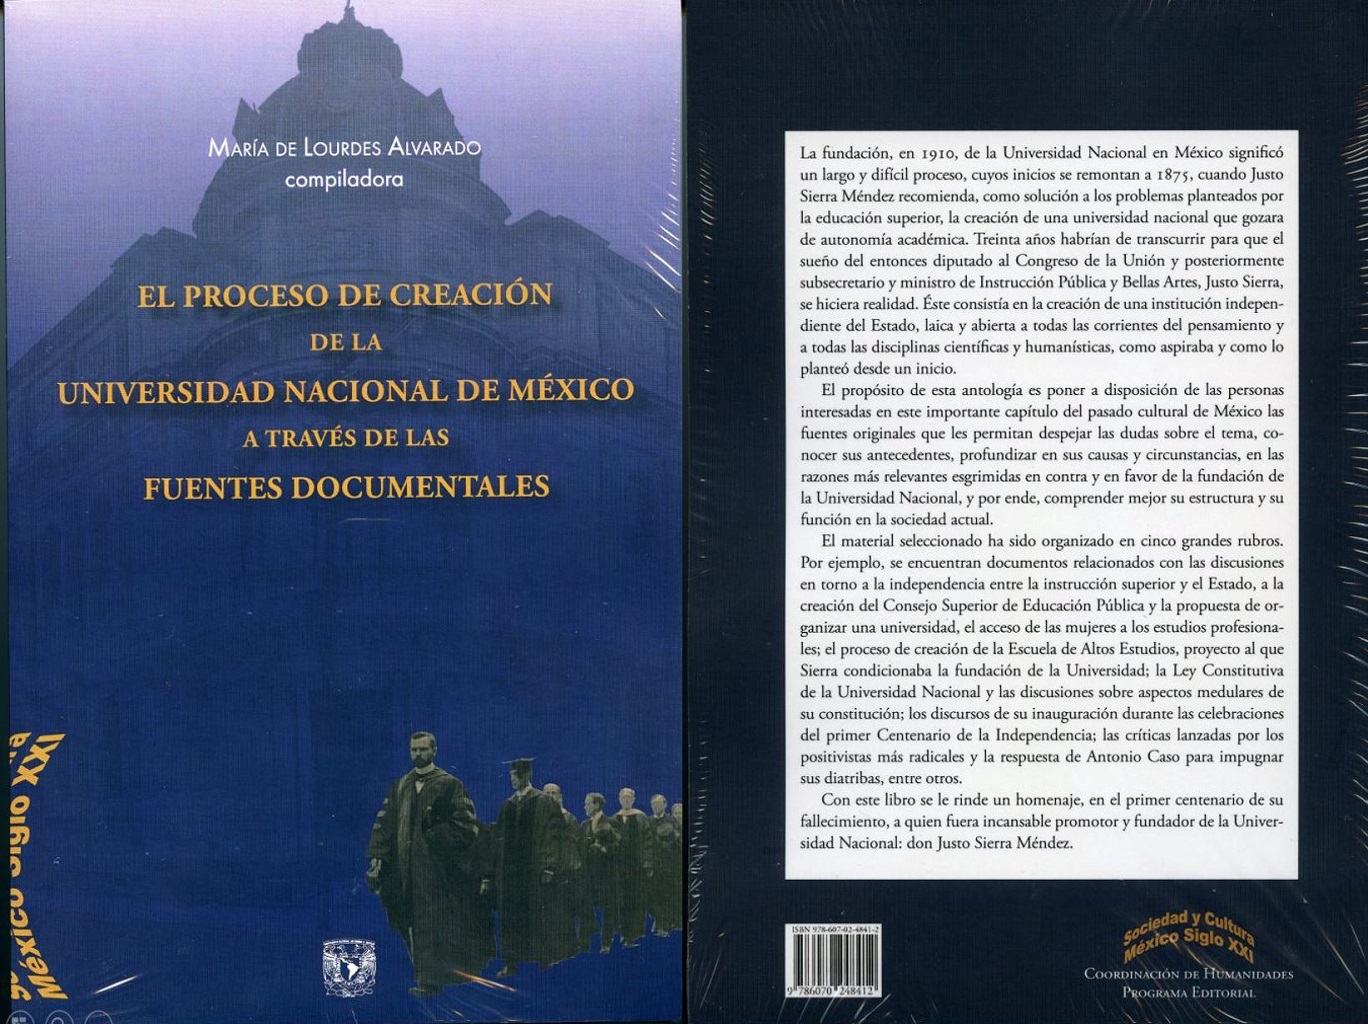 El proceso de creación de la Universidad Nacional de México a través de sus fuentes documentales